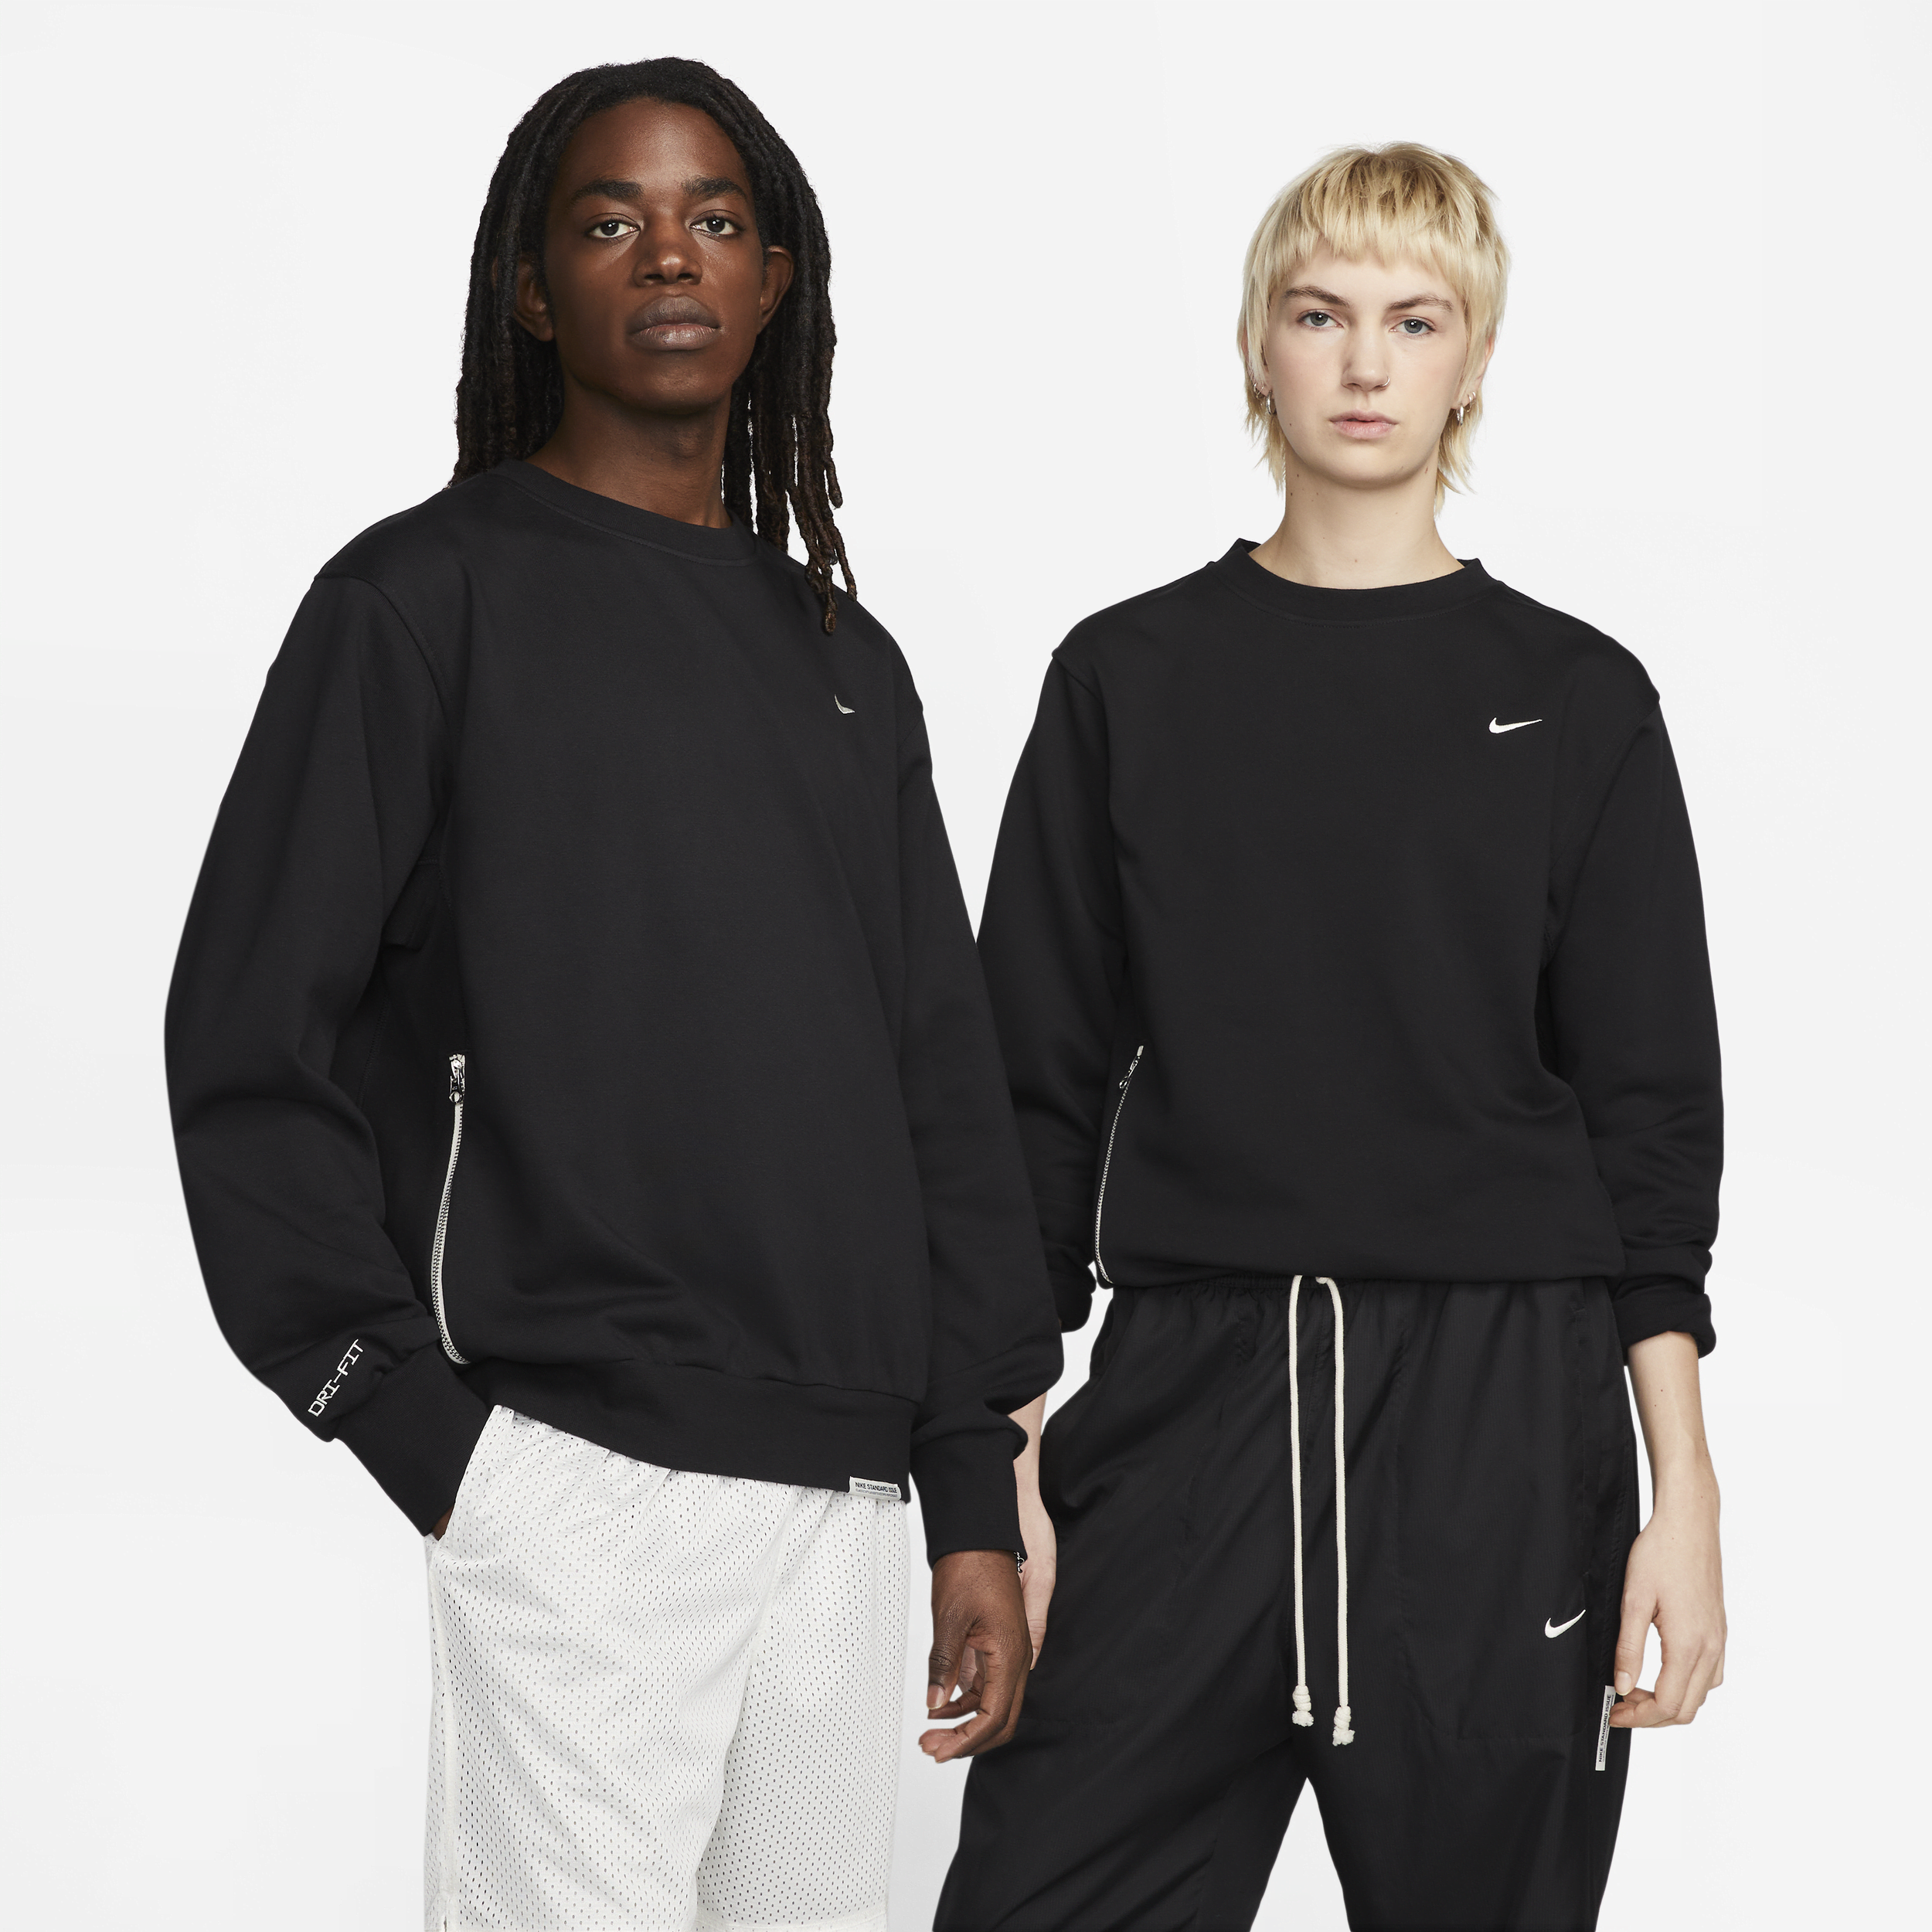 Nike Standard Issue Dri-FIT Crew-basketballoverdel til mænd - sort